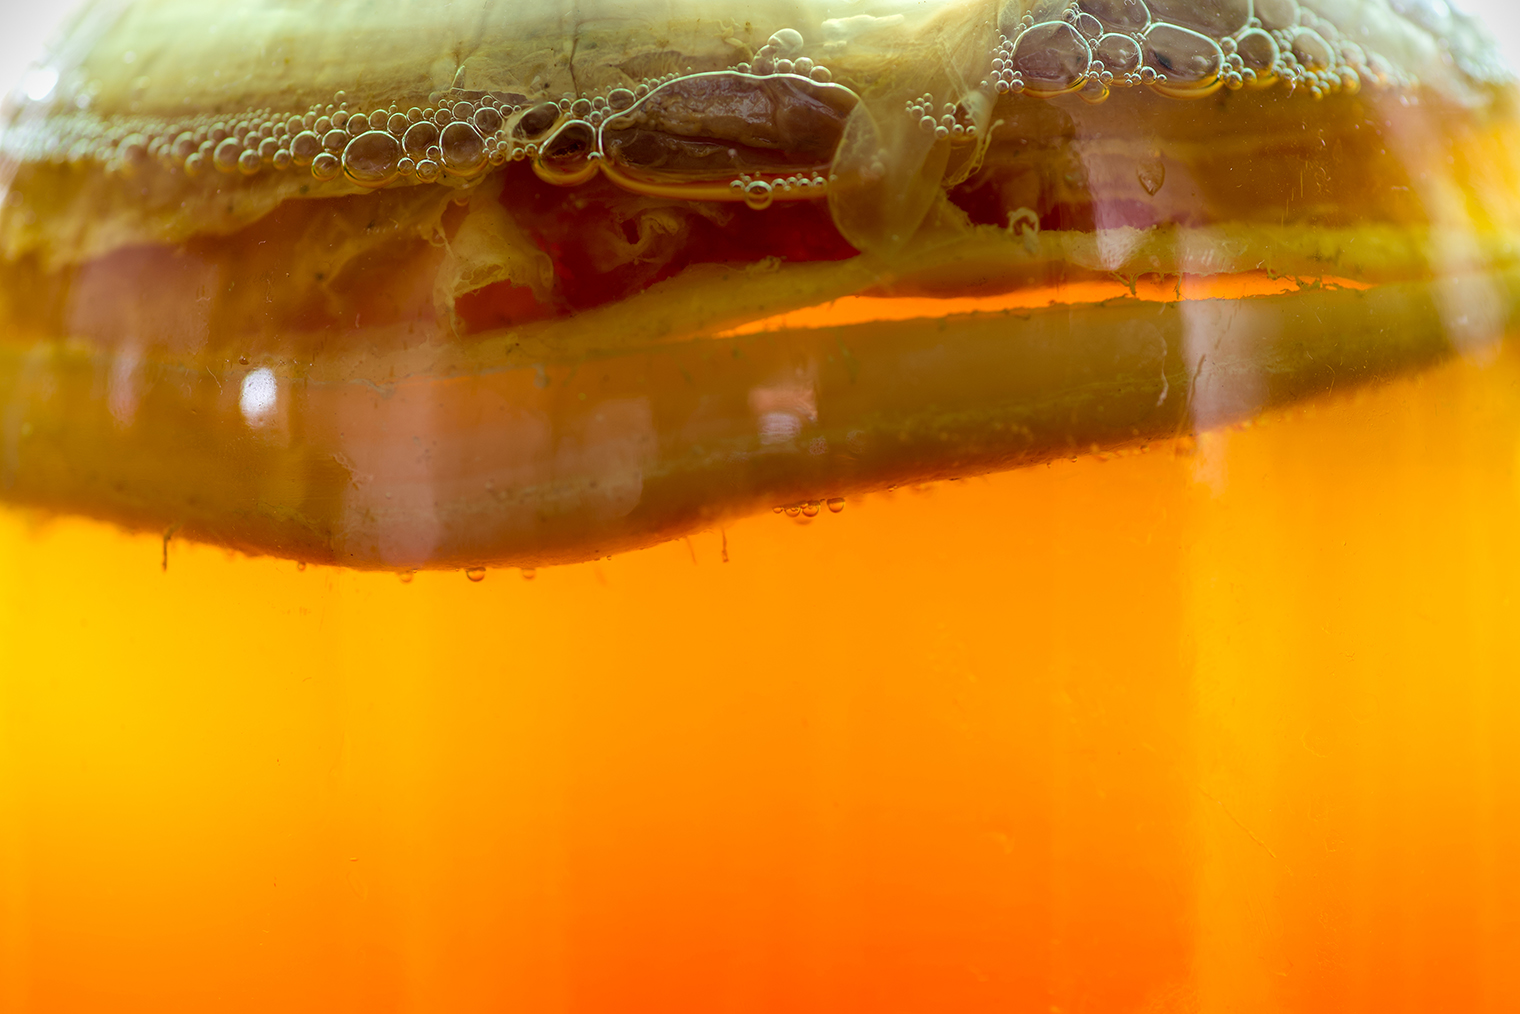 Пузырьки на поверхности чайного гриба — это нормально. Фото: Tatiana.Sidorova / Shutterstock.com